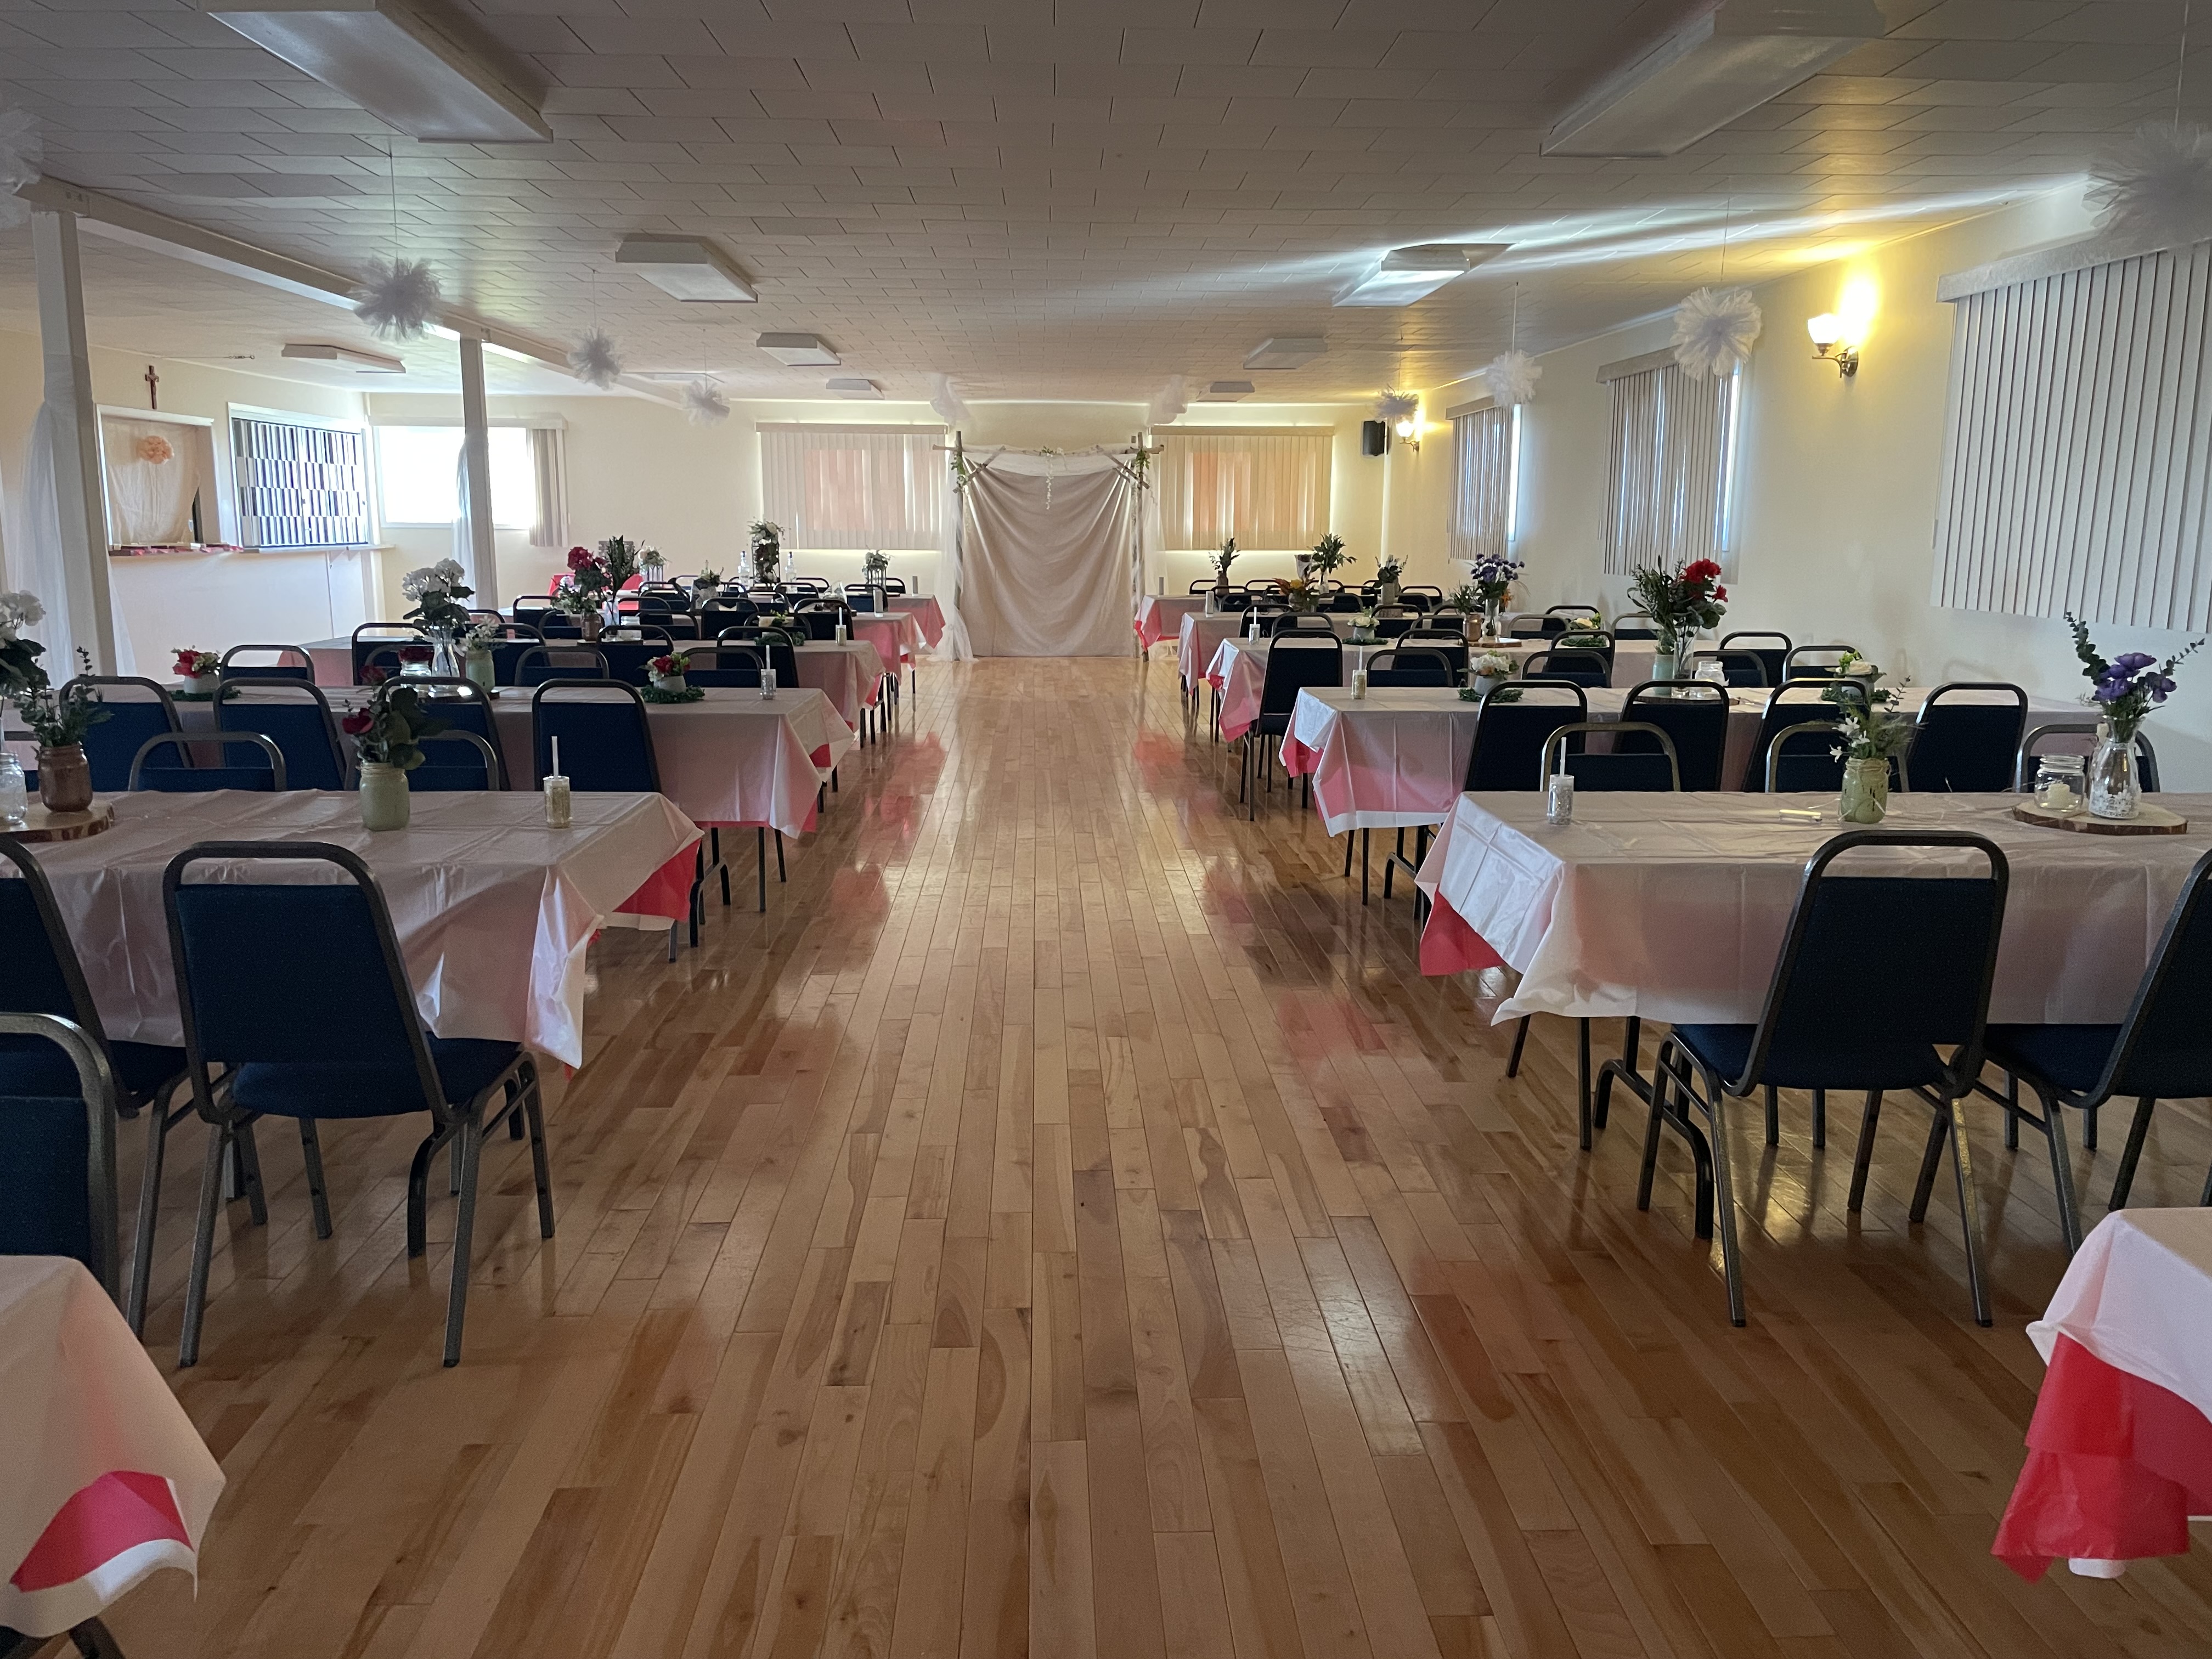 La salle communautaire de Lefaivre présentant 12 tables rectangulaires bien décorées.